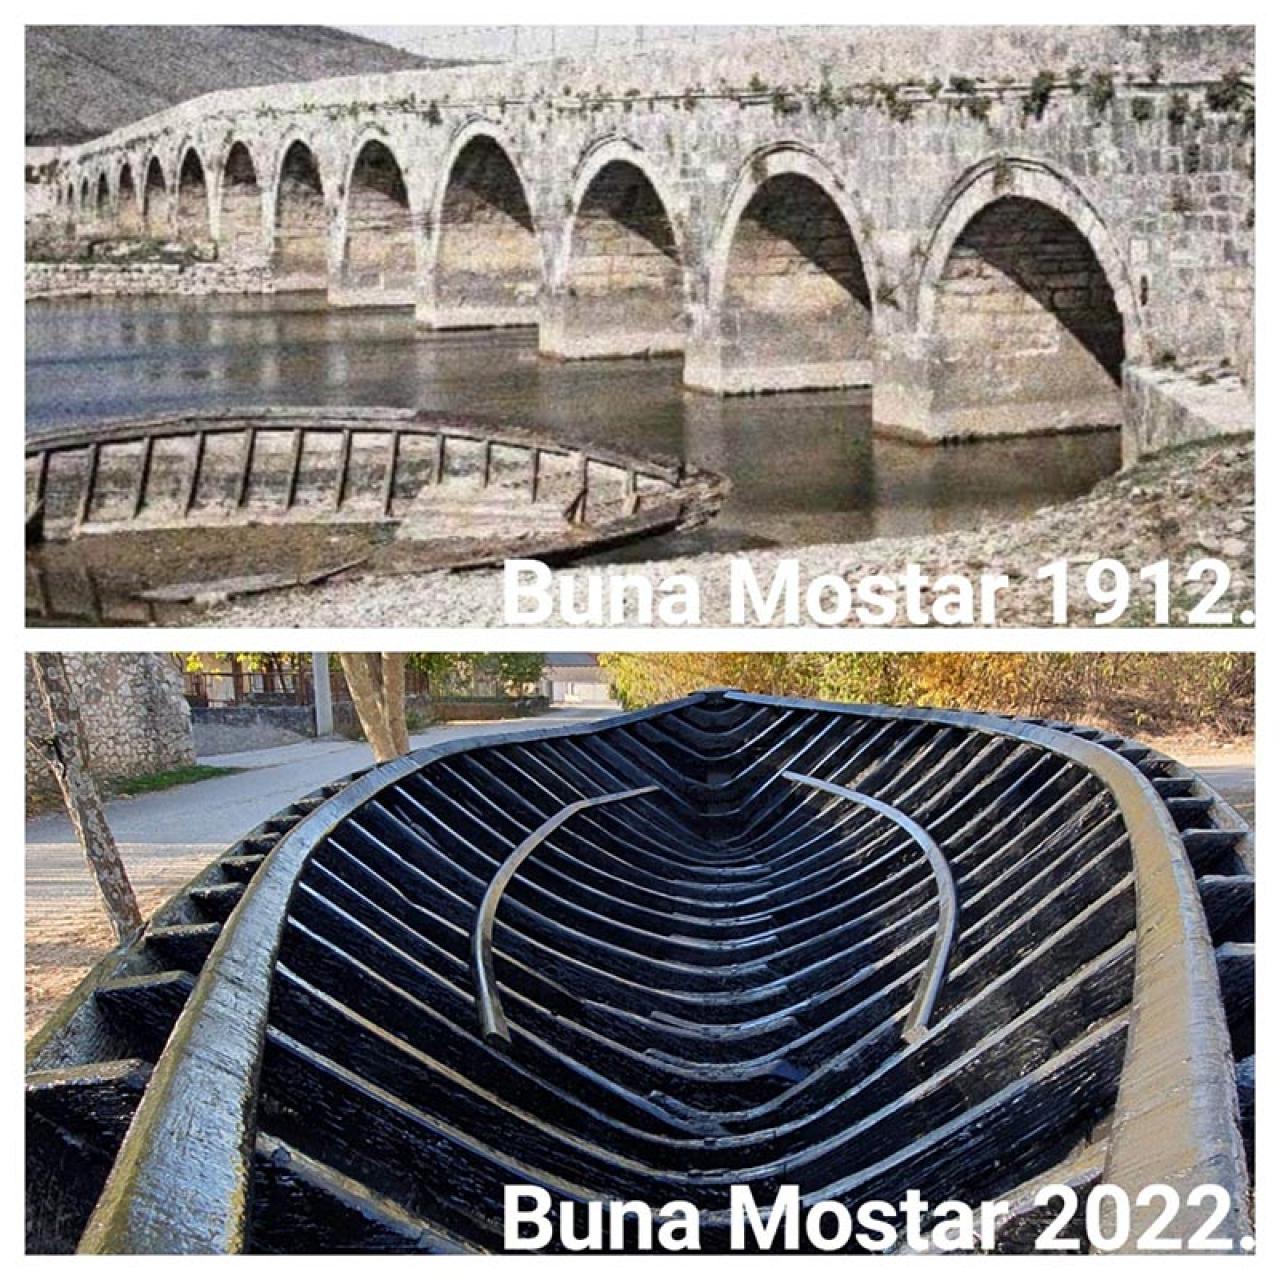 Nakon više od 100 godina lađa ponovo u Mostaru - Nakon više od 100 godina lađa ponovo u Mostaru